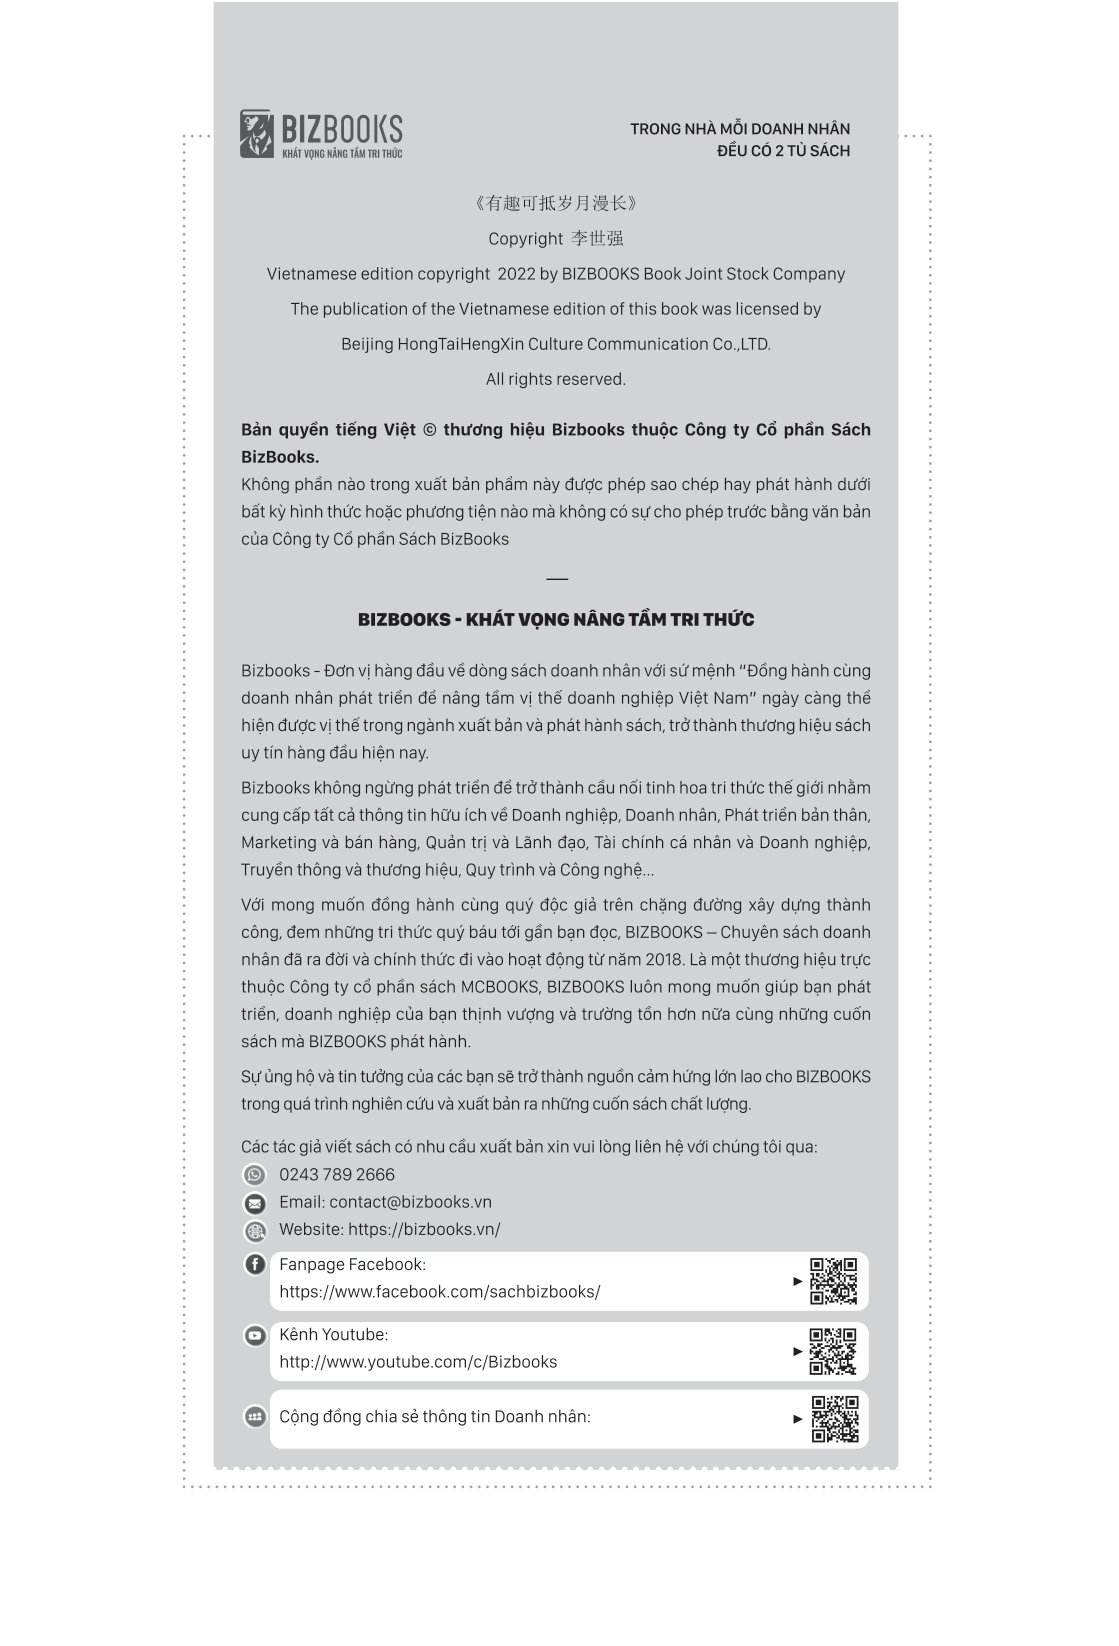 Sự Thông Minh Trong Hài Hước - Nói Tinh Tế, Dễ Vào Tim PDF